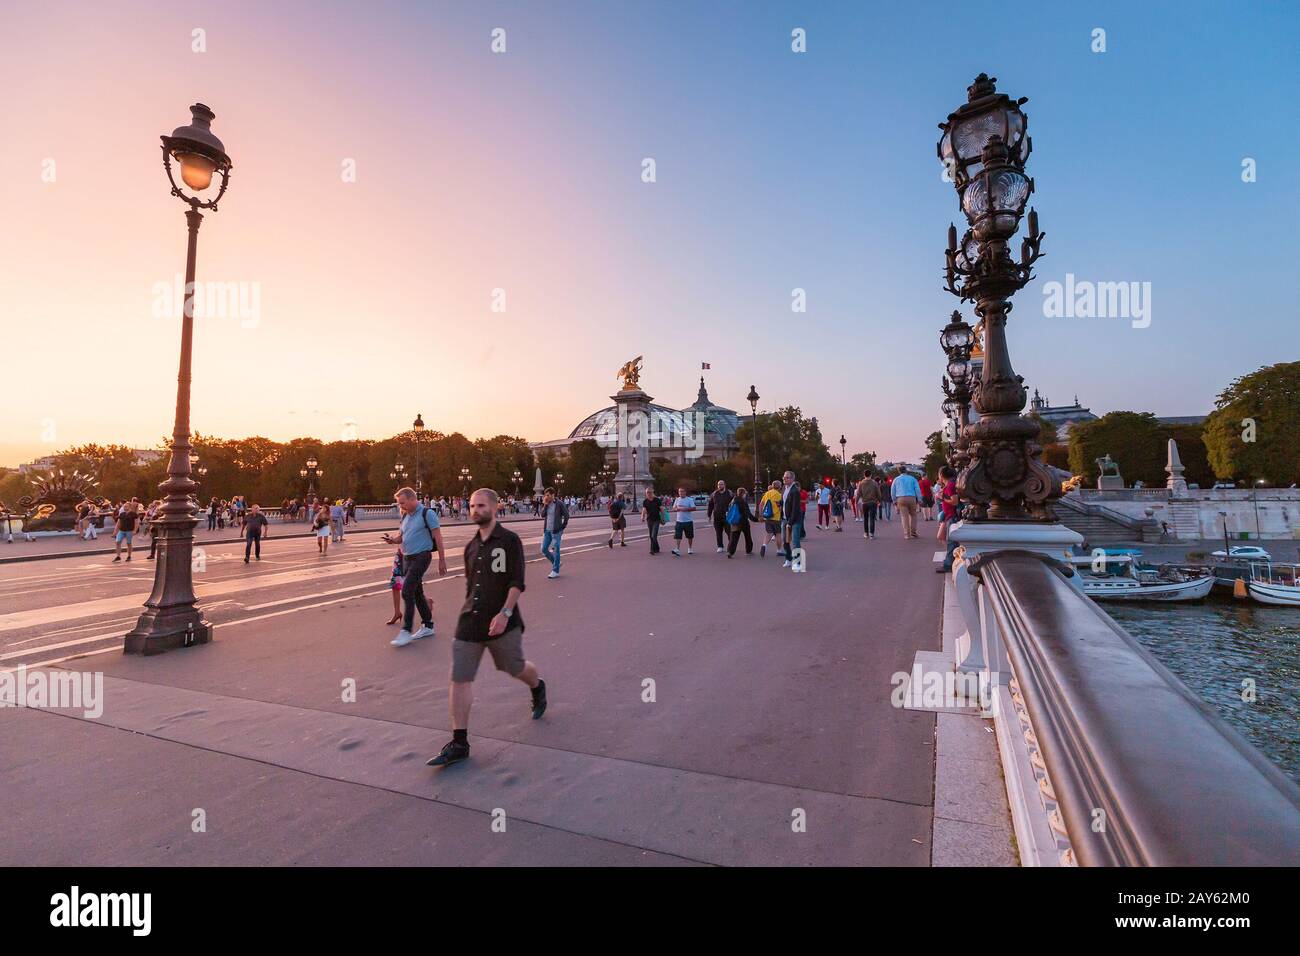 28 de julio de 2019, París, Francia: La gente camina por el puente Alejandro III durante una brillante puesta de sol sobre el Sena. Viaje a París Foto de stock